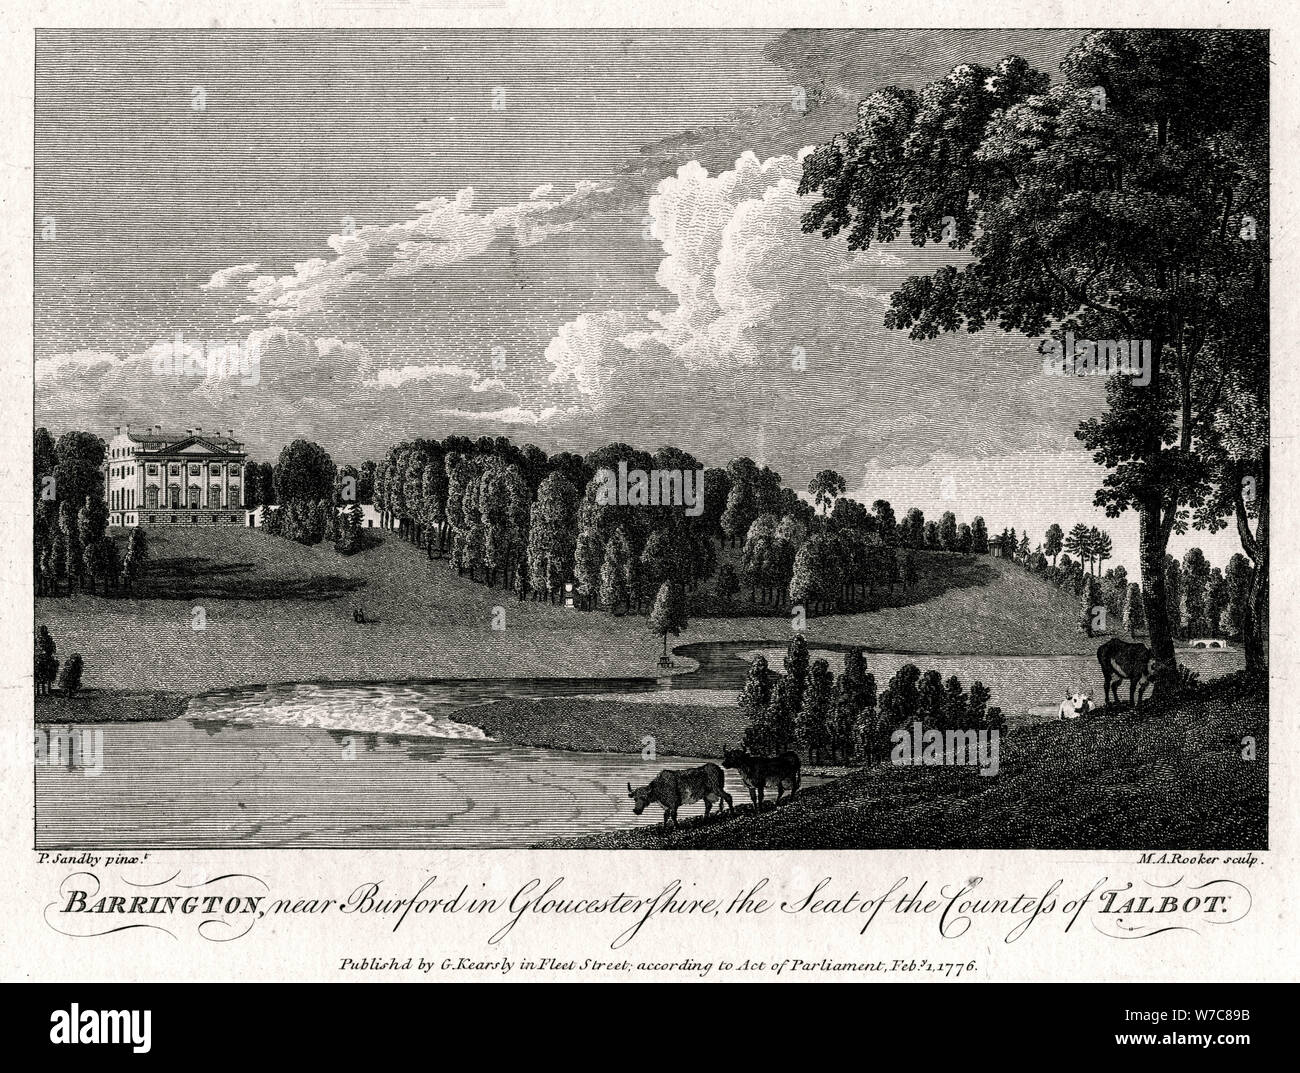 "Barrington, vicino a Burford in Gloucestershire, Sede della contessa di Talbot', 1776. Artista: Michael Rooker Angelo Foto Stock